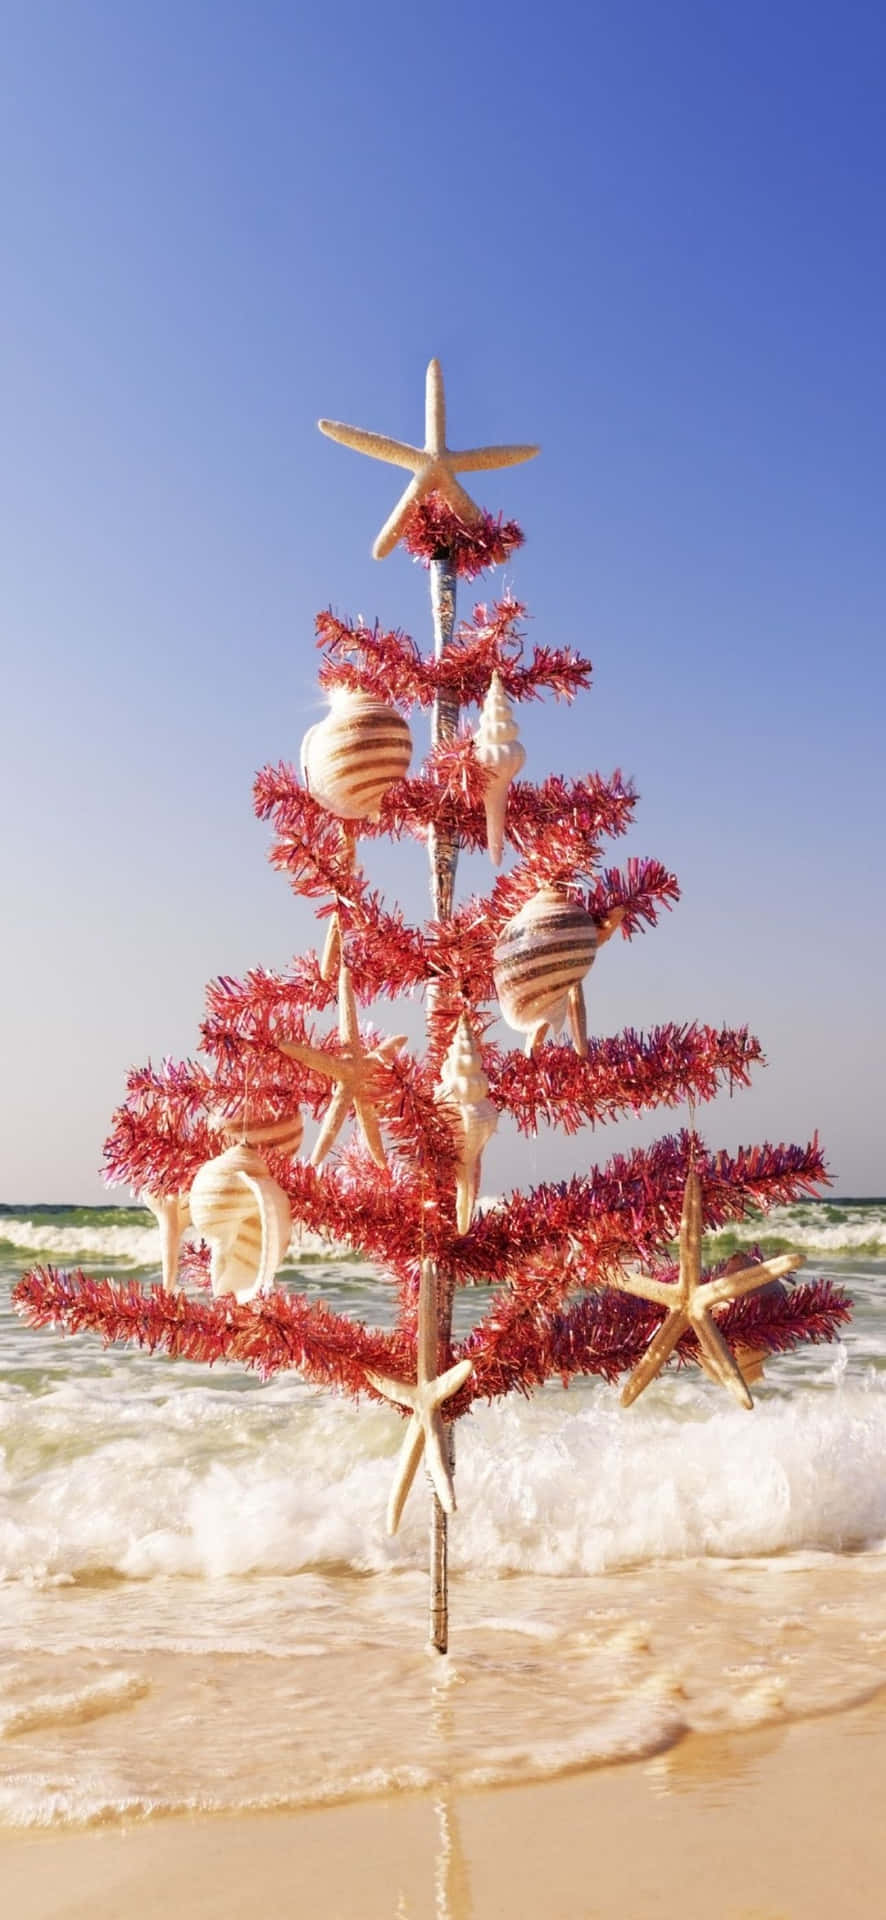 Einweihnachtsbaum Am Strand Mit Seesternen Und Muscheln.